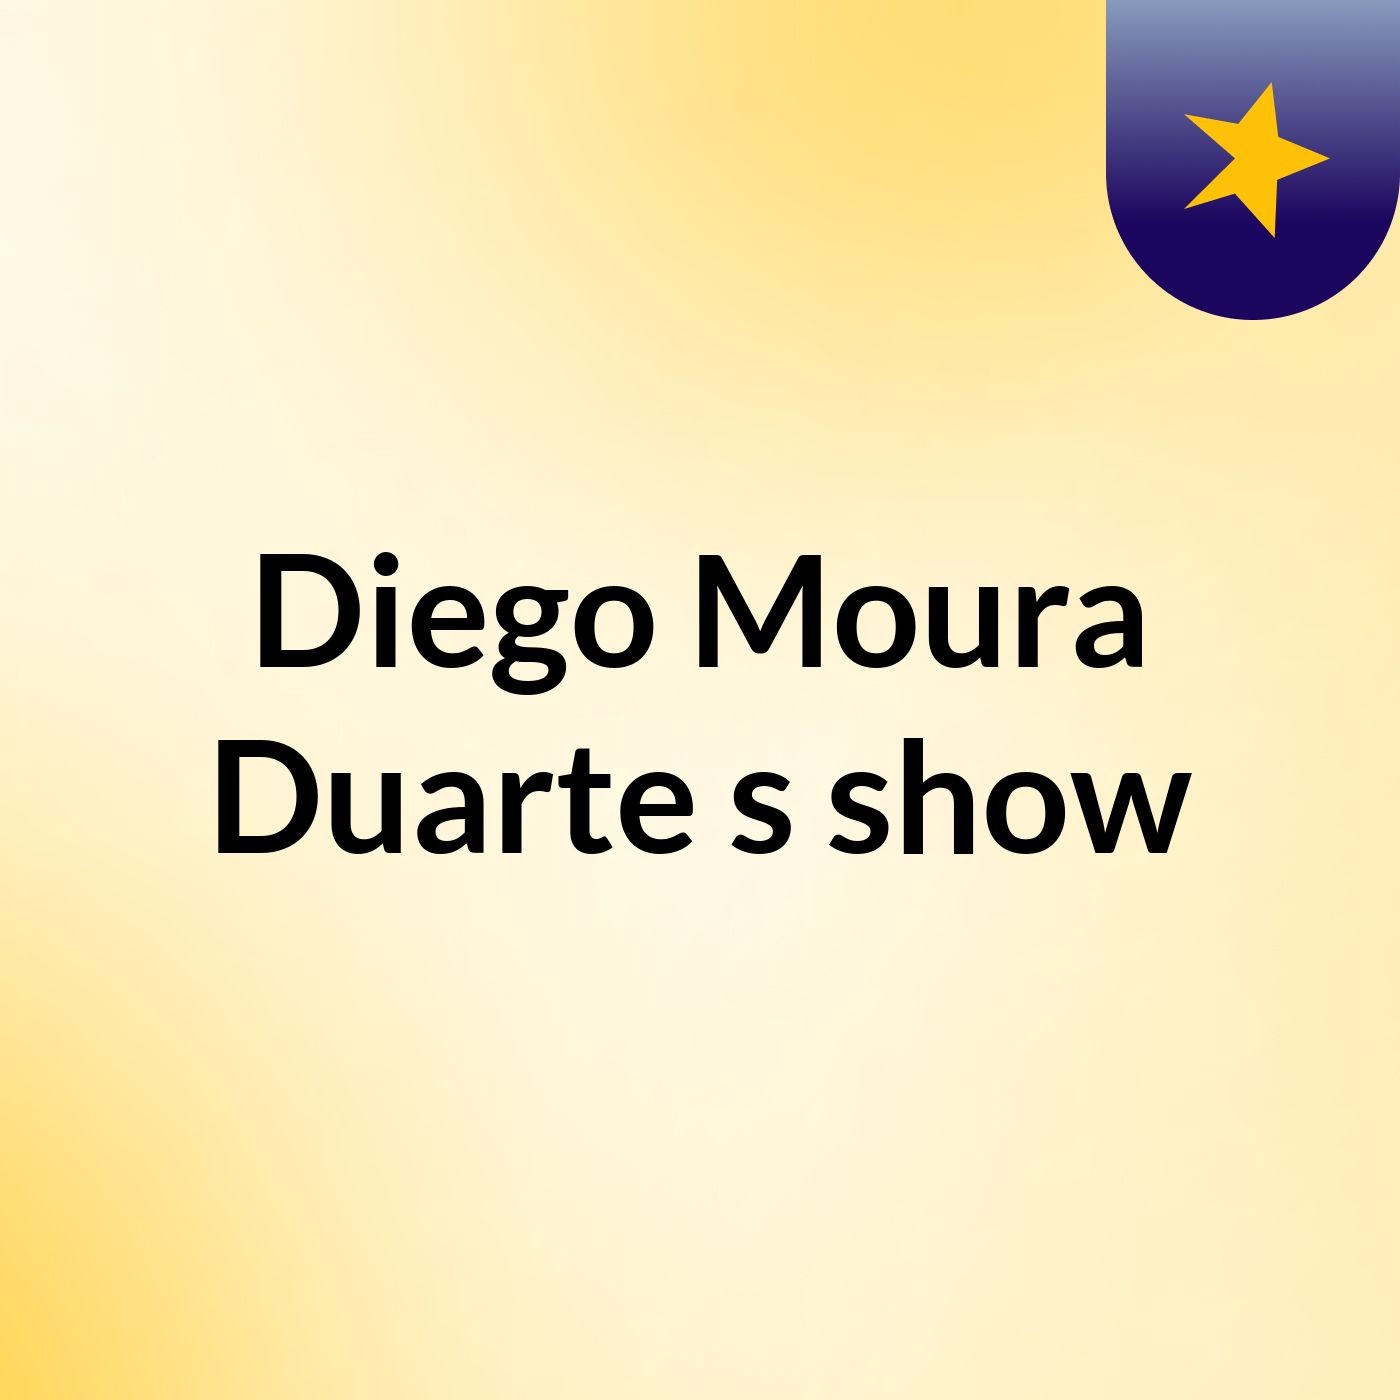 Diego Moura Duarte's show